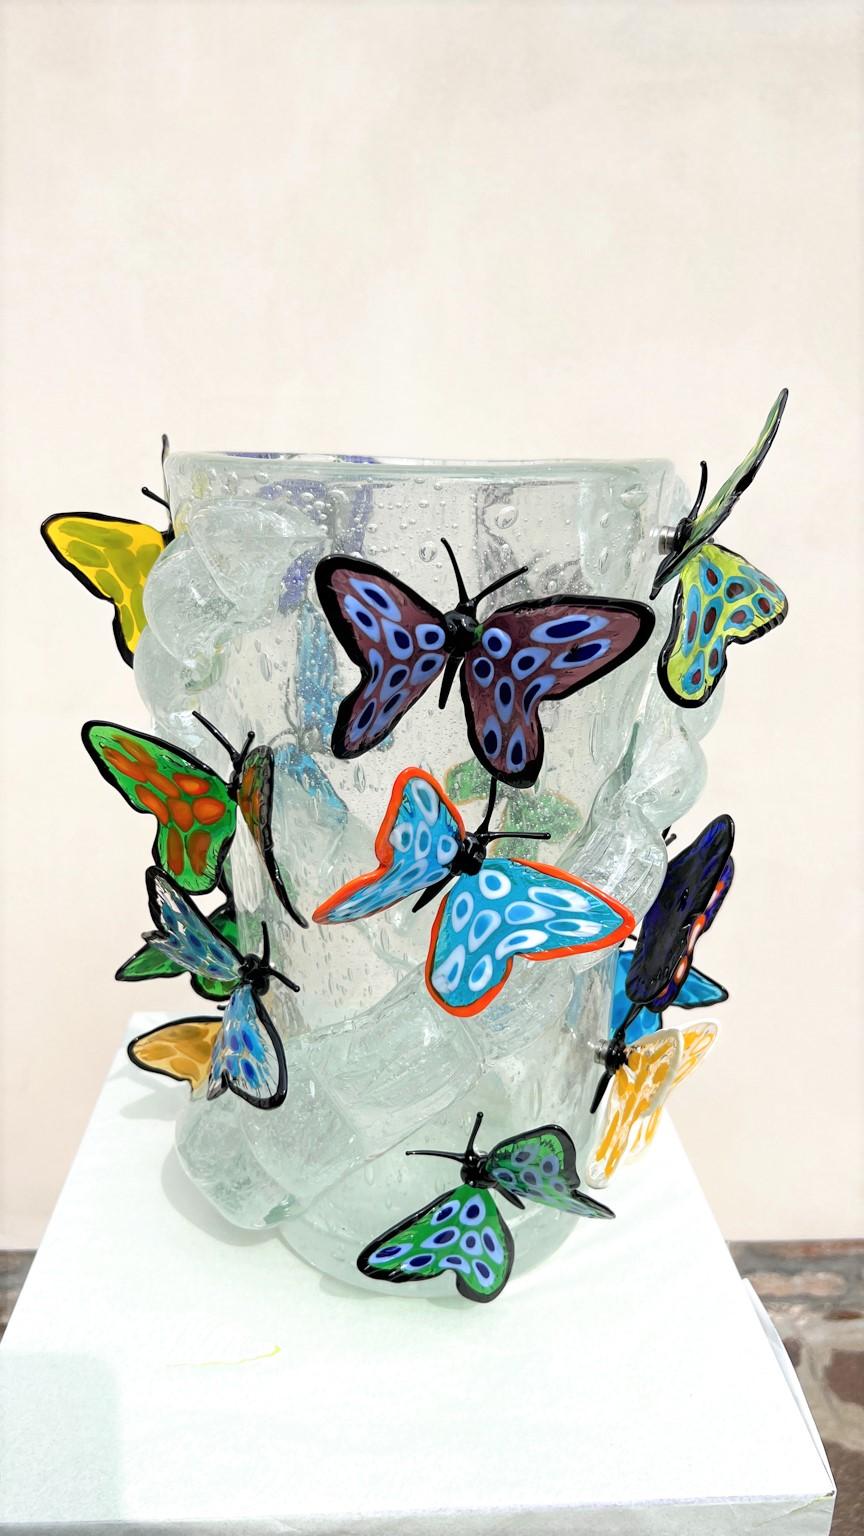 Handgefertigte Kristall Pulegoso Murano Glas geblasen Vase mit 16 transparente mehrfarbige Schmetterlinge mit Magneten befestigt. 
Moderne Vase ideal für eine moderne und rustikale klassische Umgebung, für jedermann. Diese Arbeit wurde in